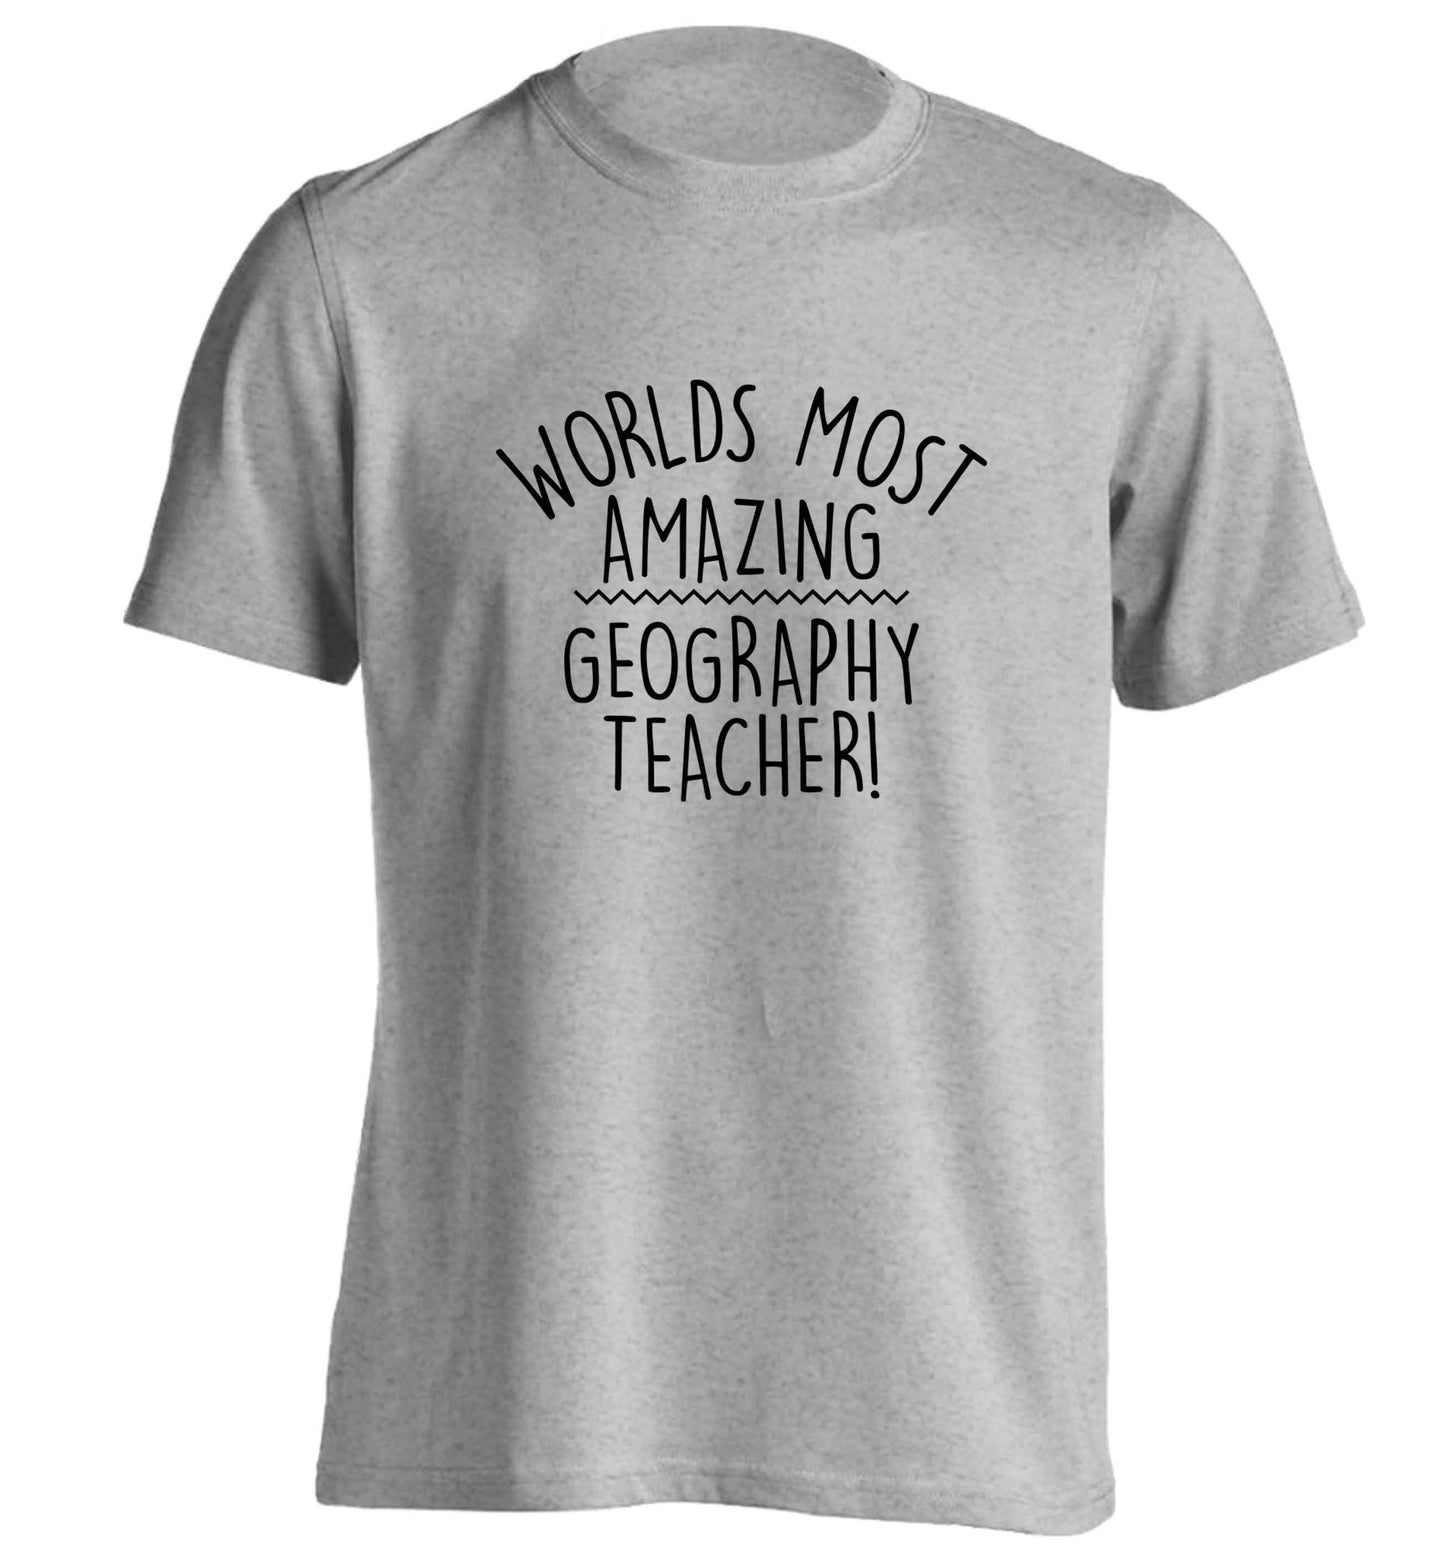 Worlds most amazing geography teacher adults unisex grey Tshirt 2XL